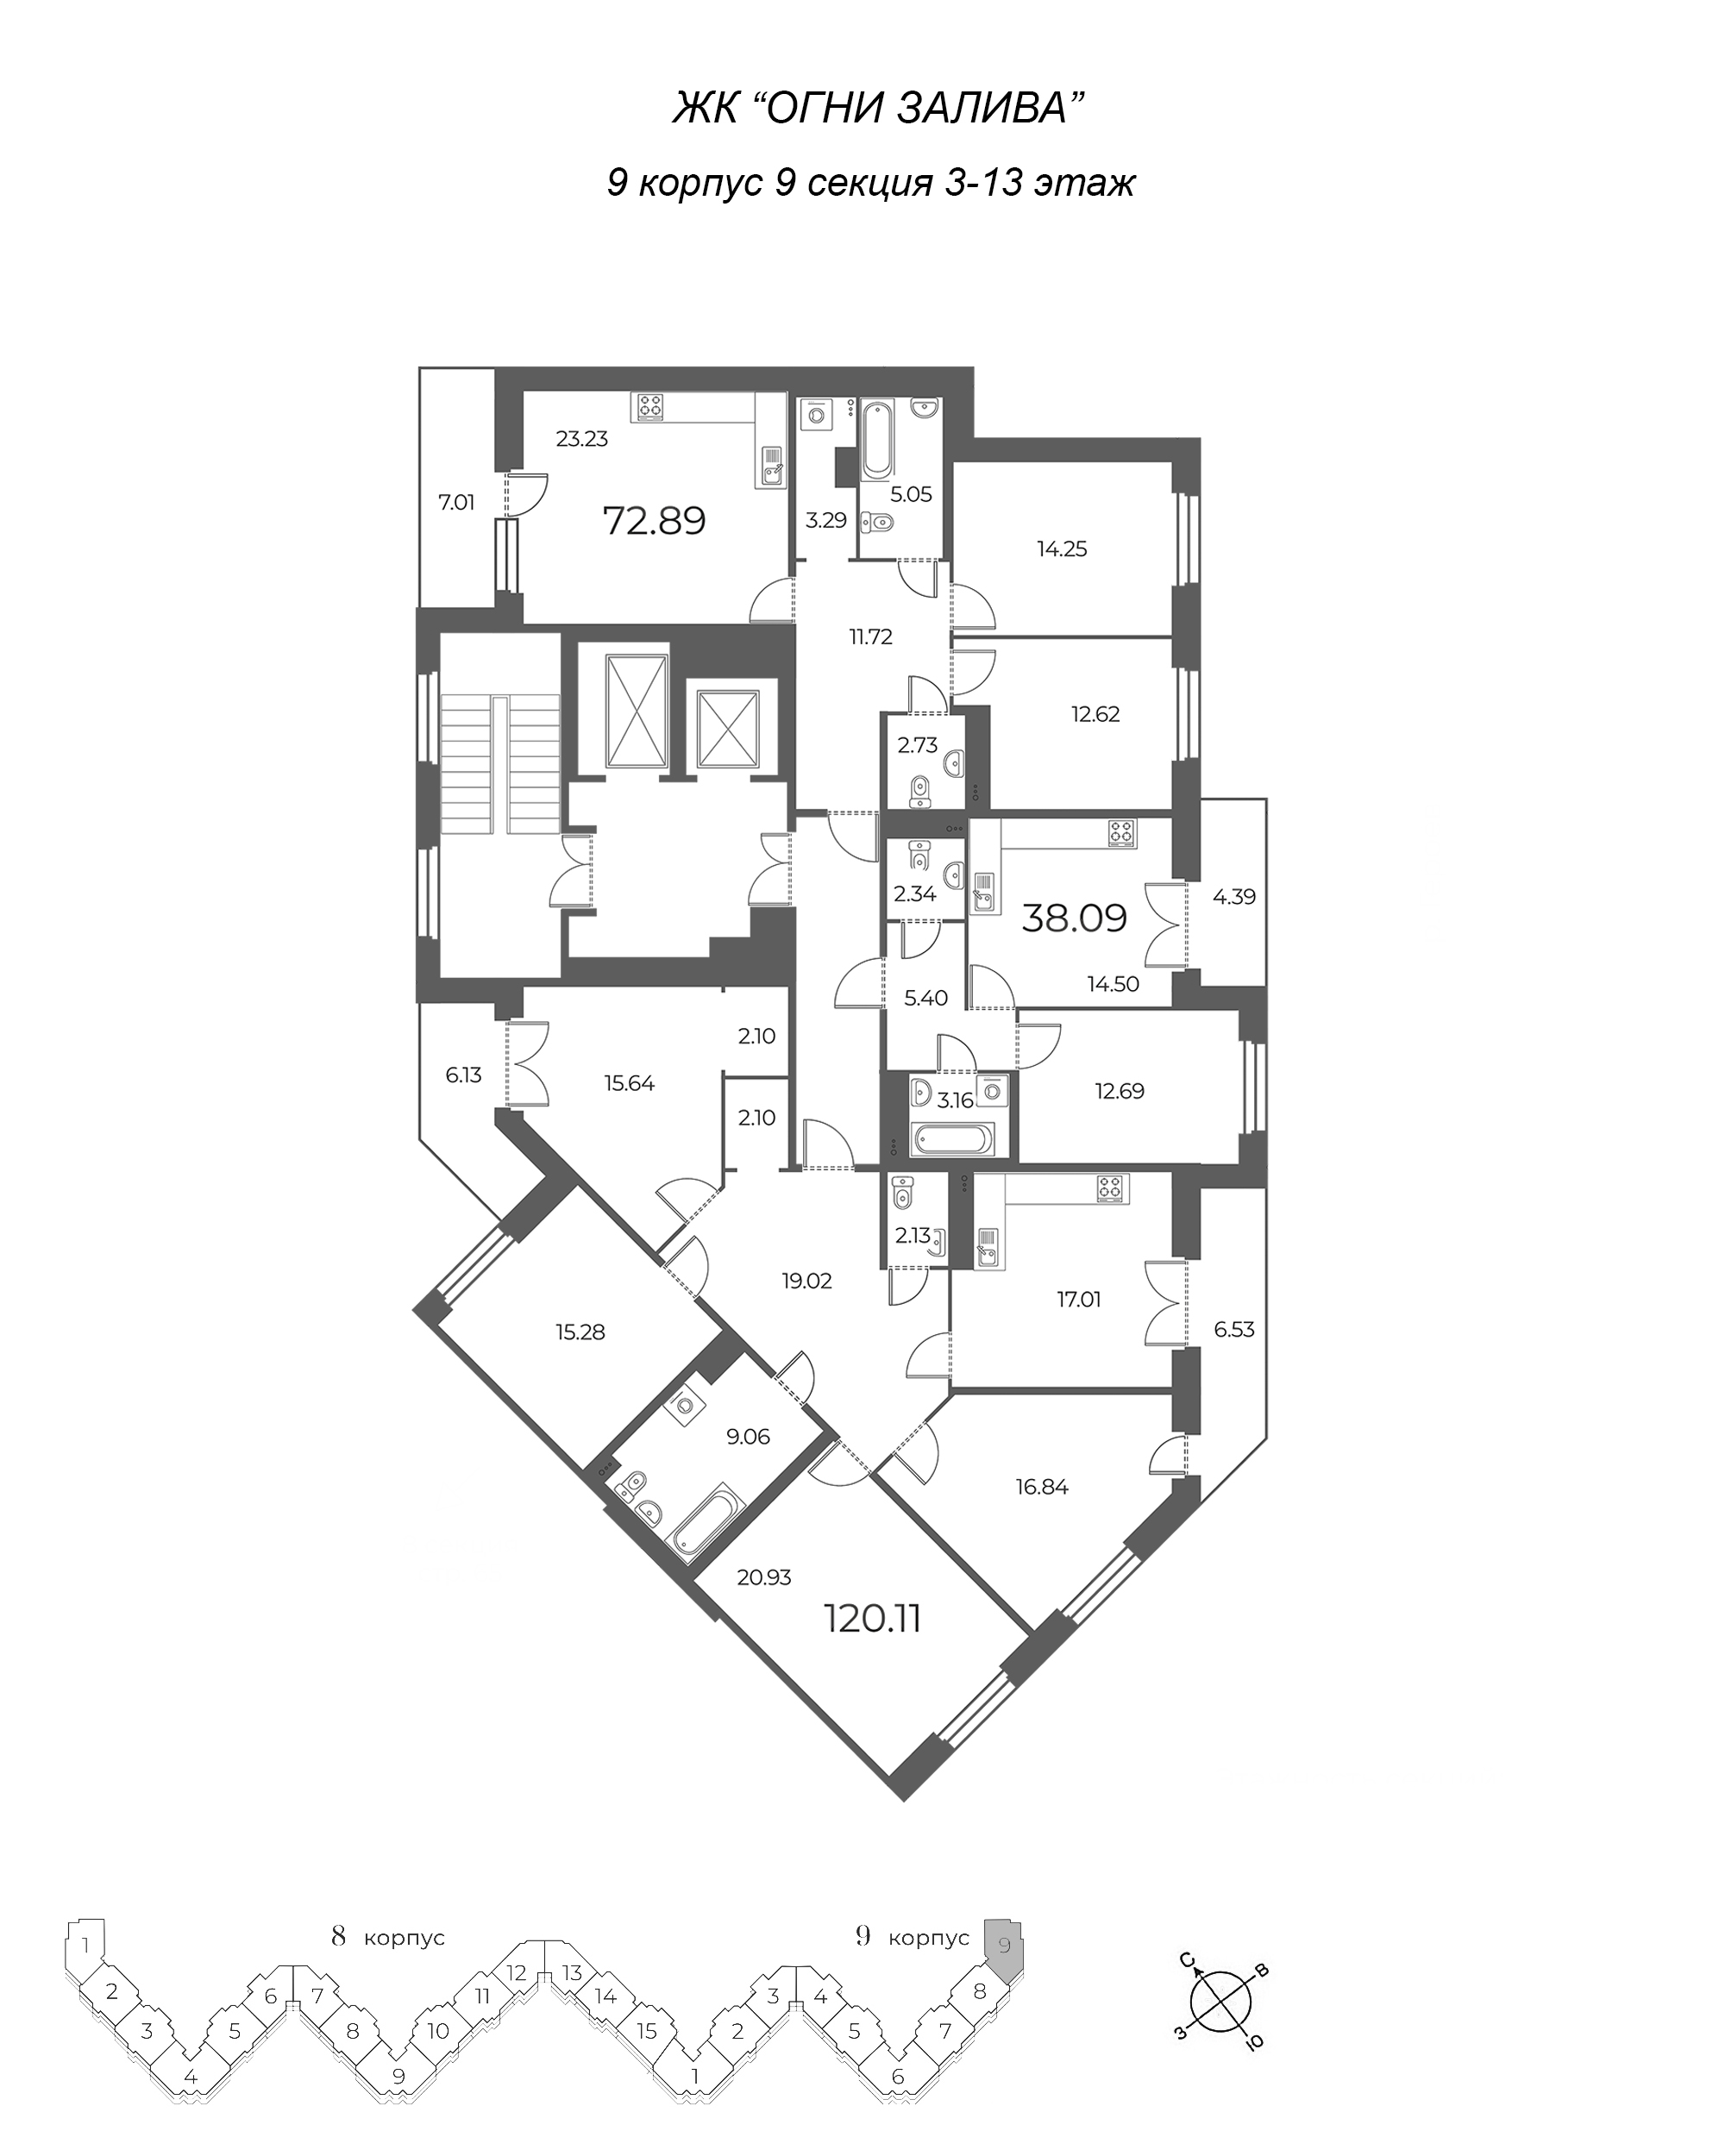 5-комнатная (Евро) квартира, 126.44 м² в ЖК "Огни Залива" - планировка этажа